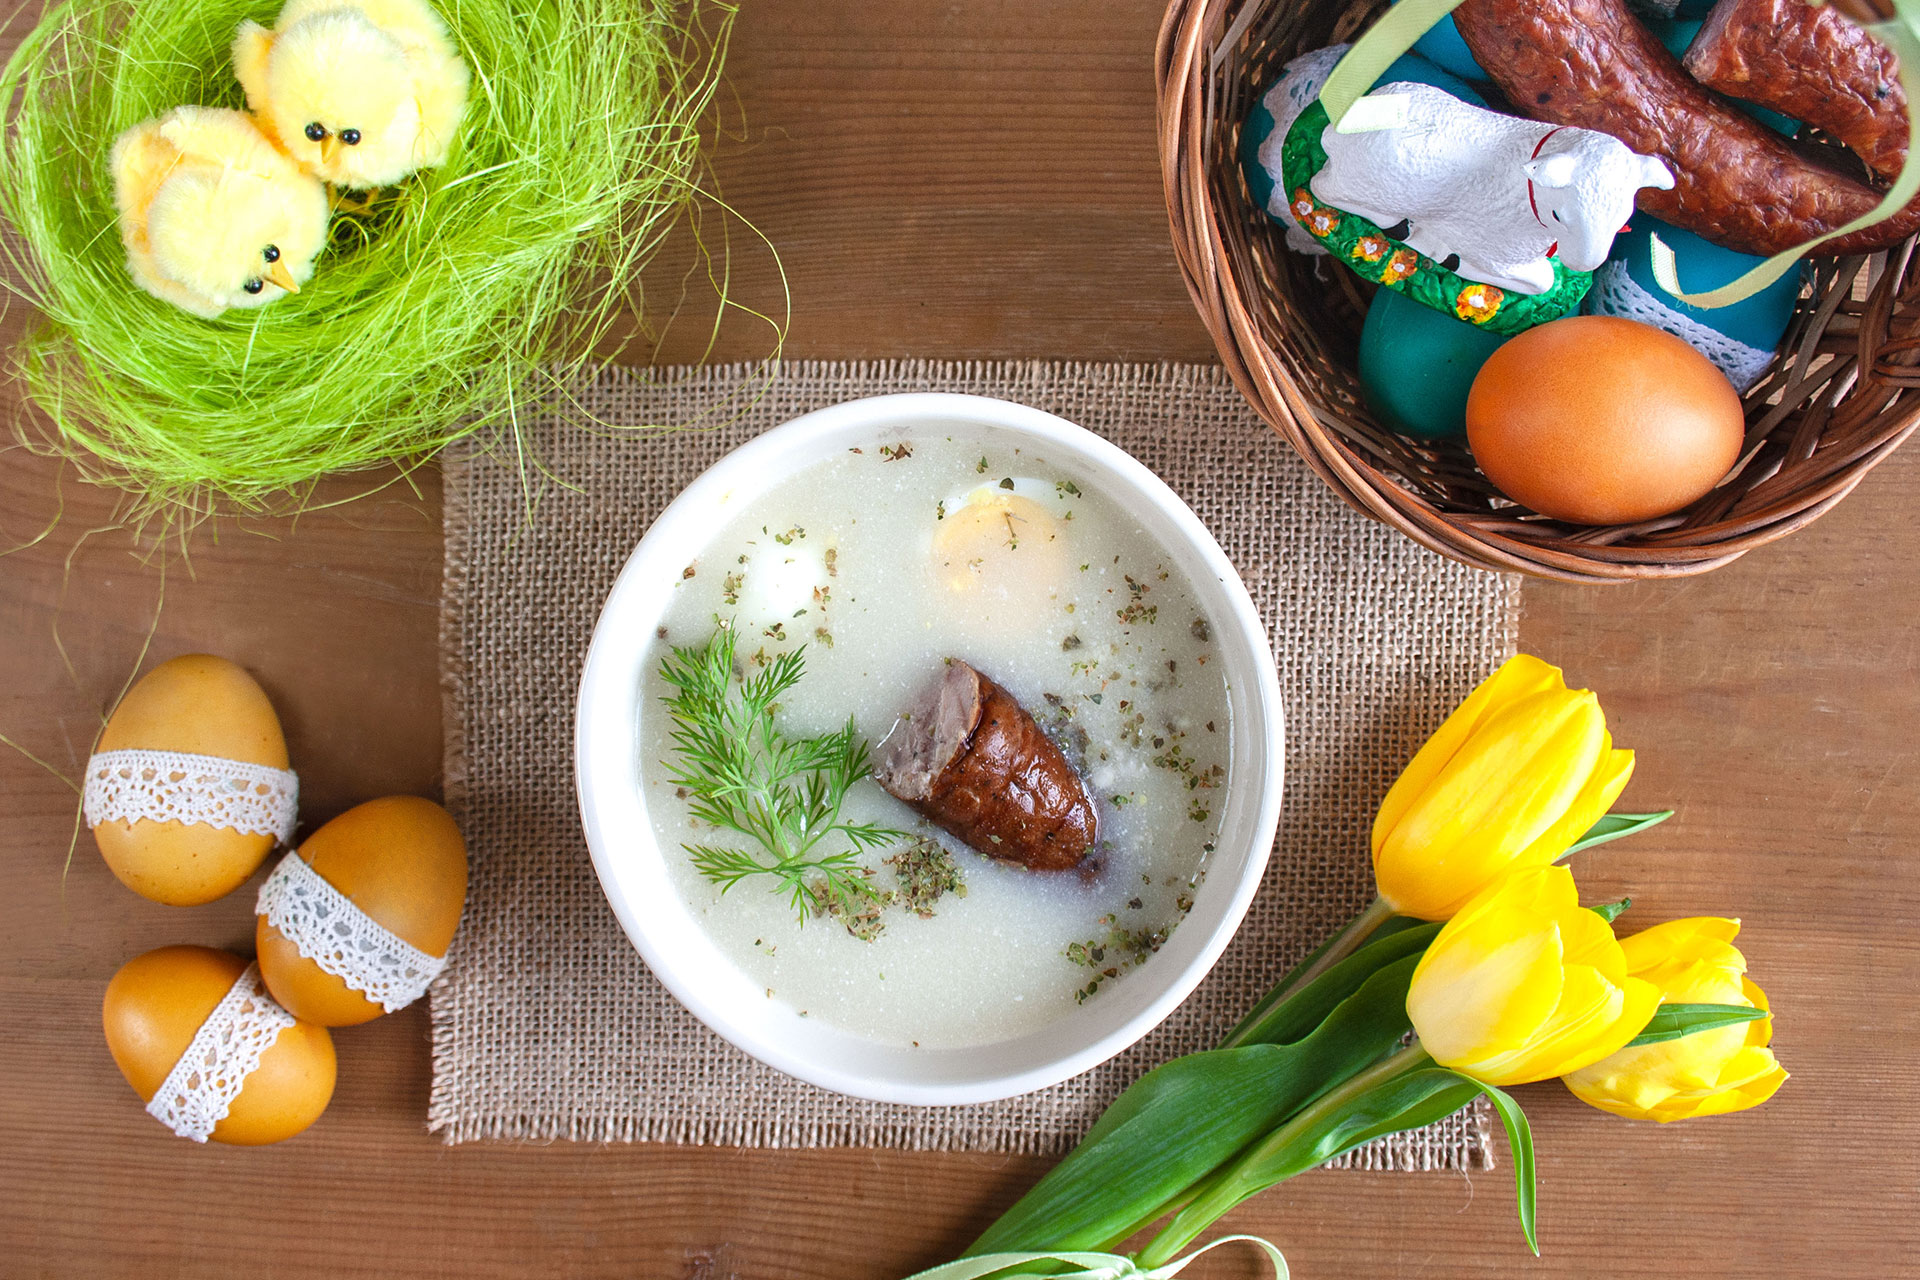 Tradycje Wielkanocne - co Polacy robią i jedzą w święta?